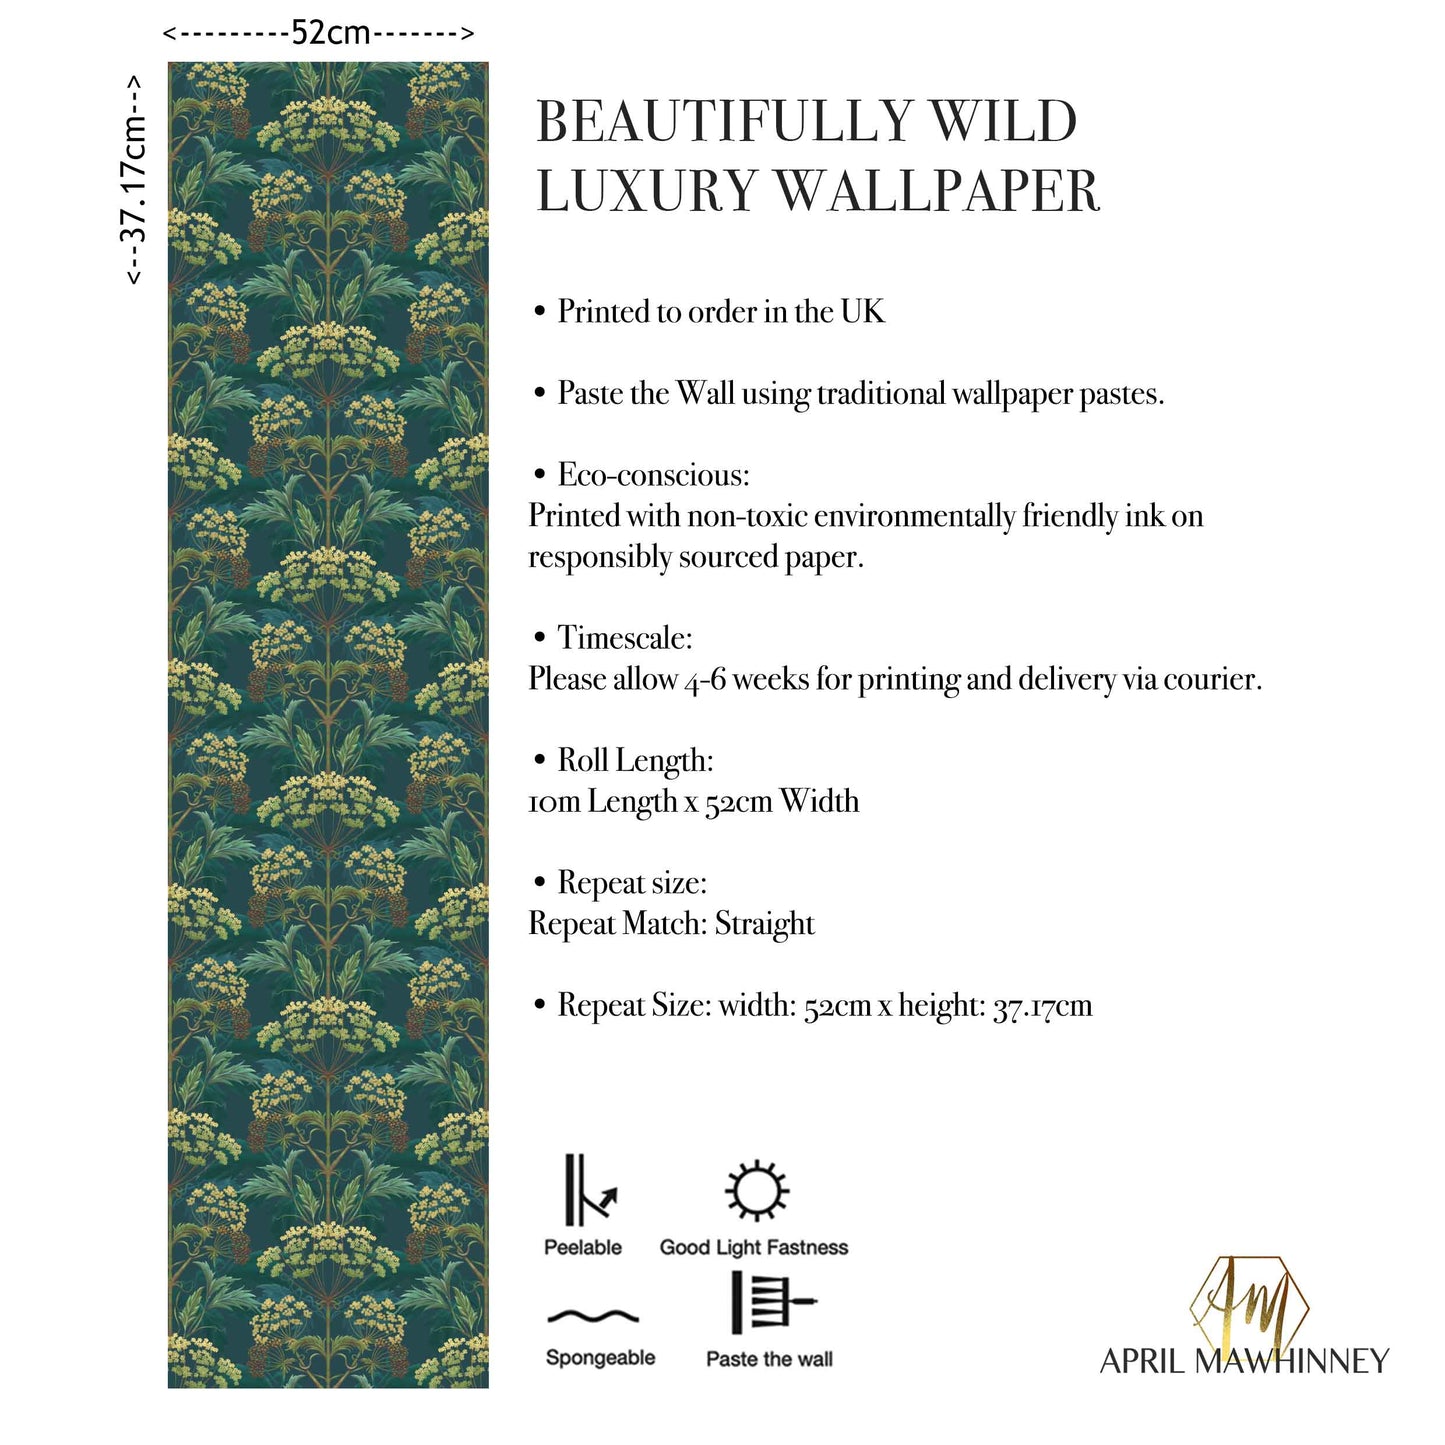 Hemlock Wallpaper in Bold Brassica